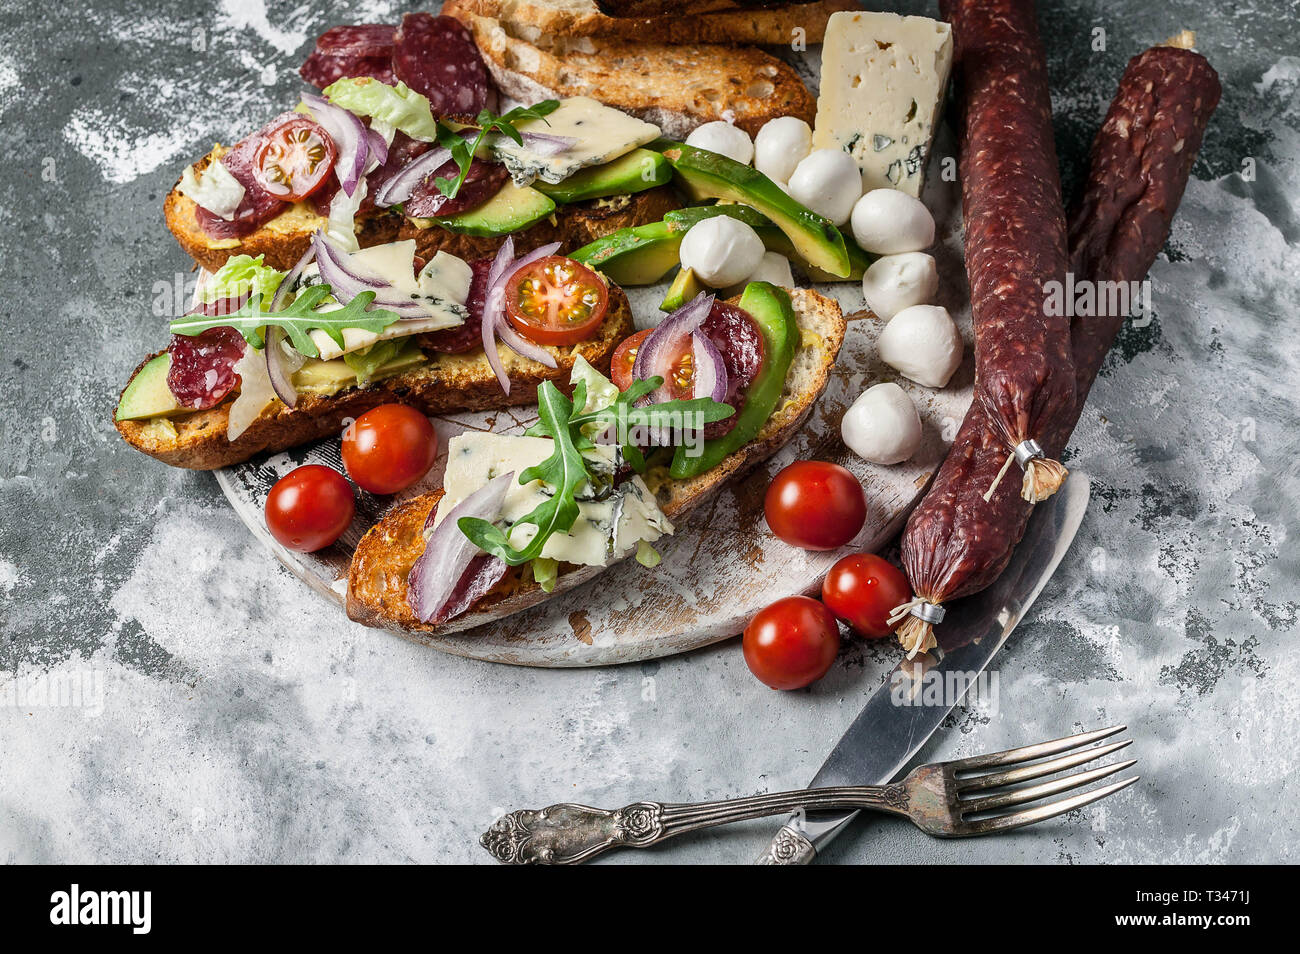 Köstliche Sandwiches mit geräucherter Wurst, Avocado, Käse, Tomaten, roten Zwiebeln und Rucola. Stockfoto